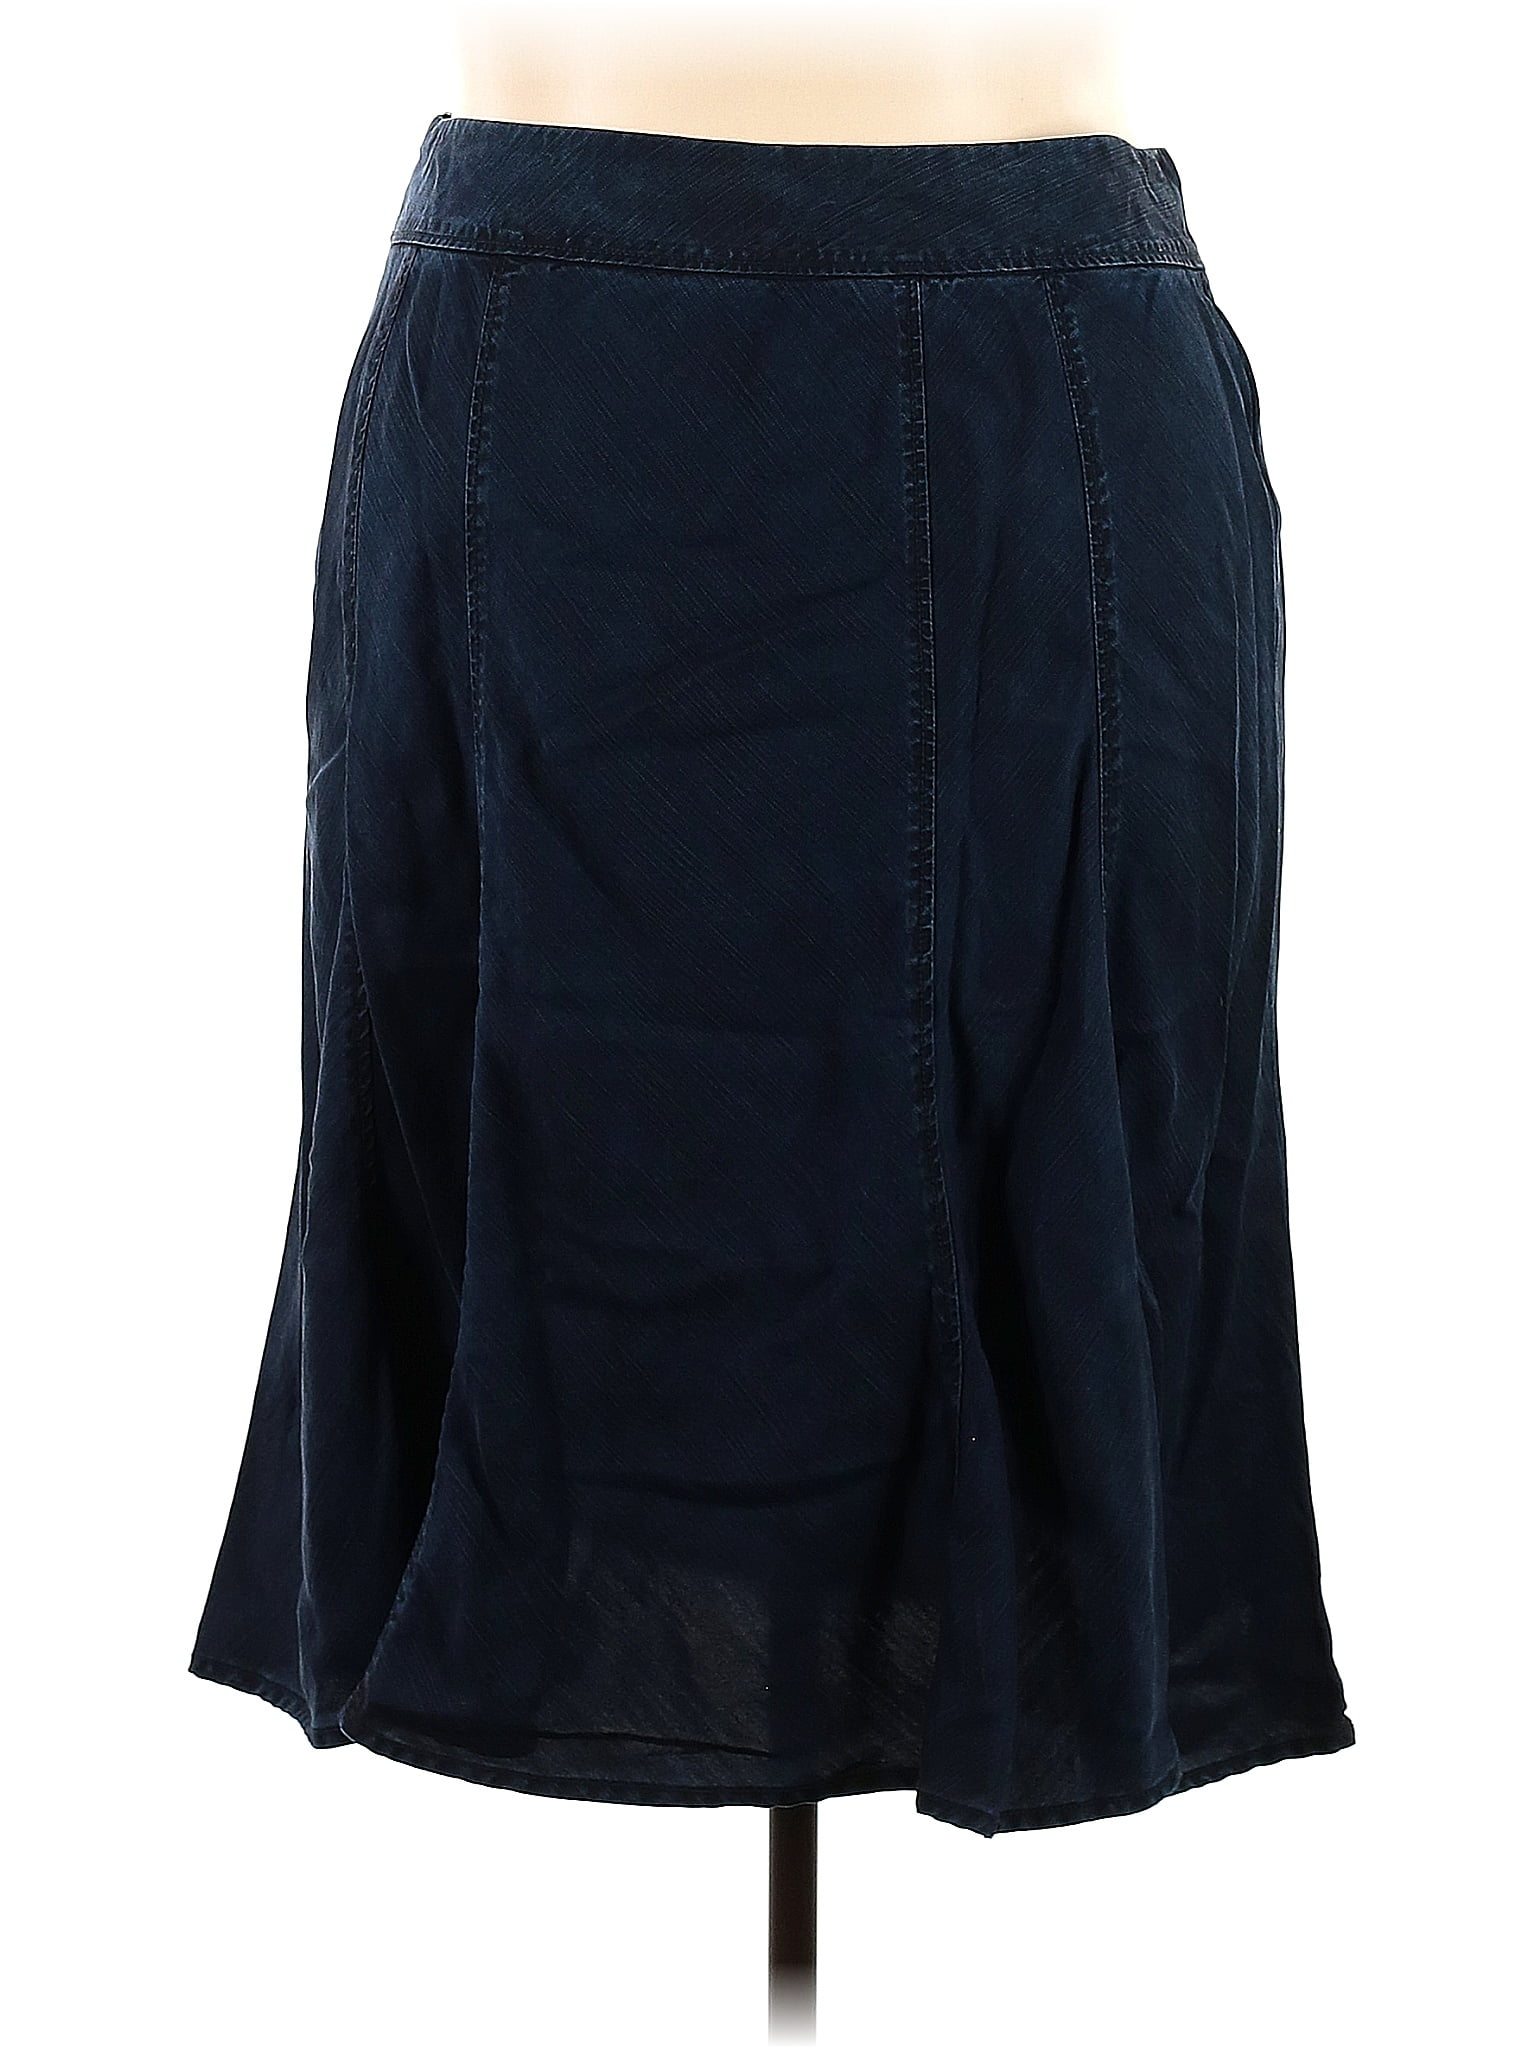 J.Jill 100% Tencel Solid Blue Casual Dress Size 2X (Plus) - 62